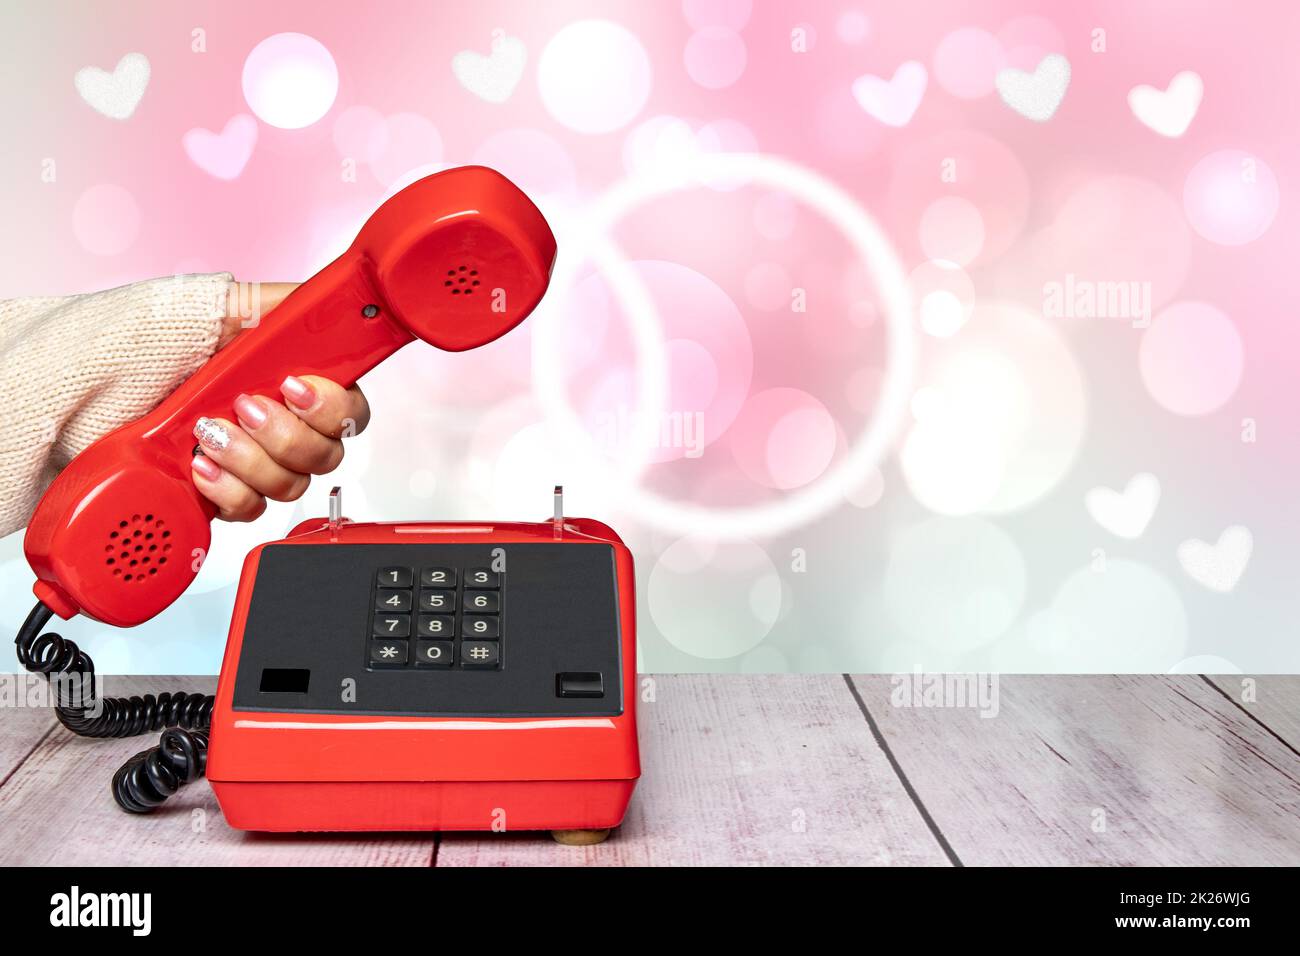 Una donna elegante e femminile splendidamente curata mano che tiene un vecchio telefono cellulare rosso sopra un astratto blurry rosa chiaro San Valentino o sfondo di nozze. Copia spazio. Informazioni generali sulla comunicazione. Foto Stock